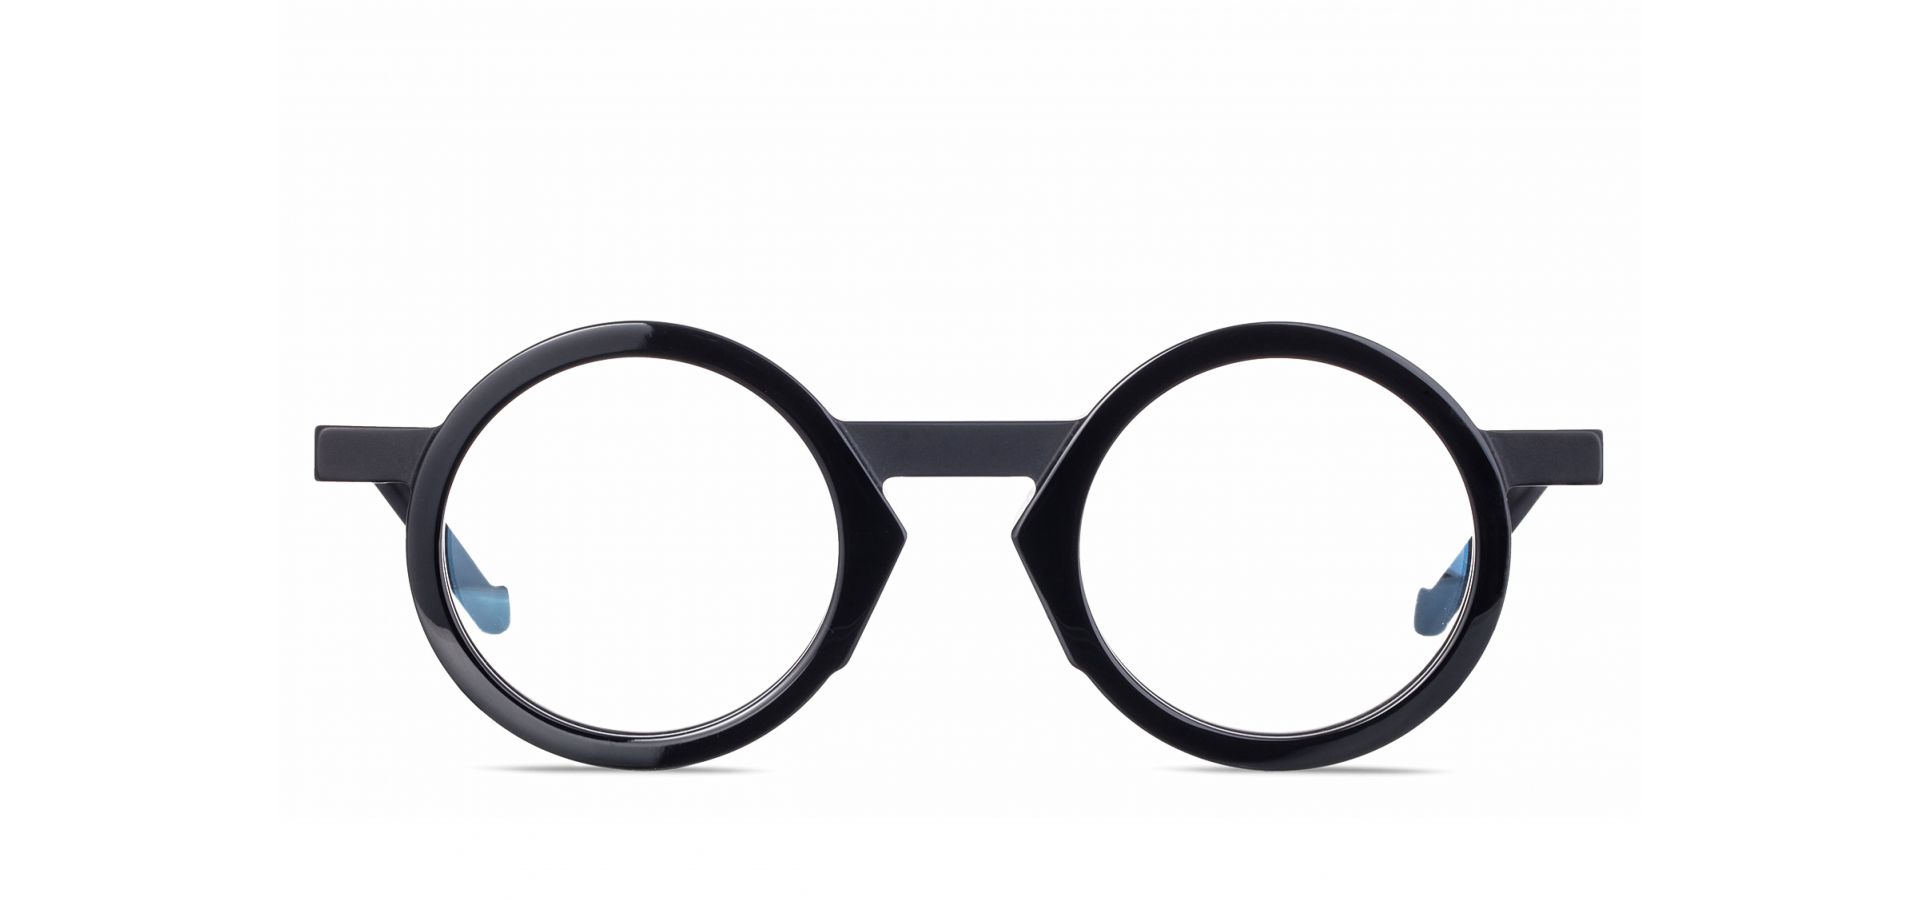 Korekcijska očala VAVA WL0039 BLACK: Velikost: 45/25/140, Spol: unisex, Material: acetat/kovinska